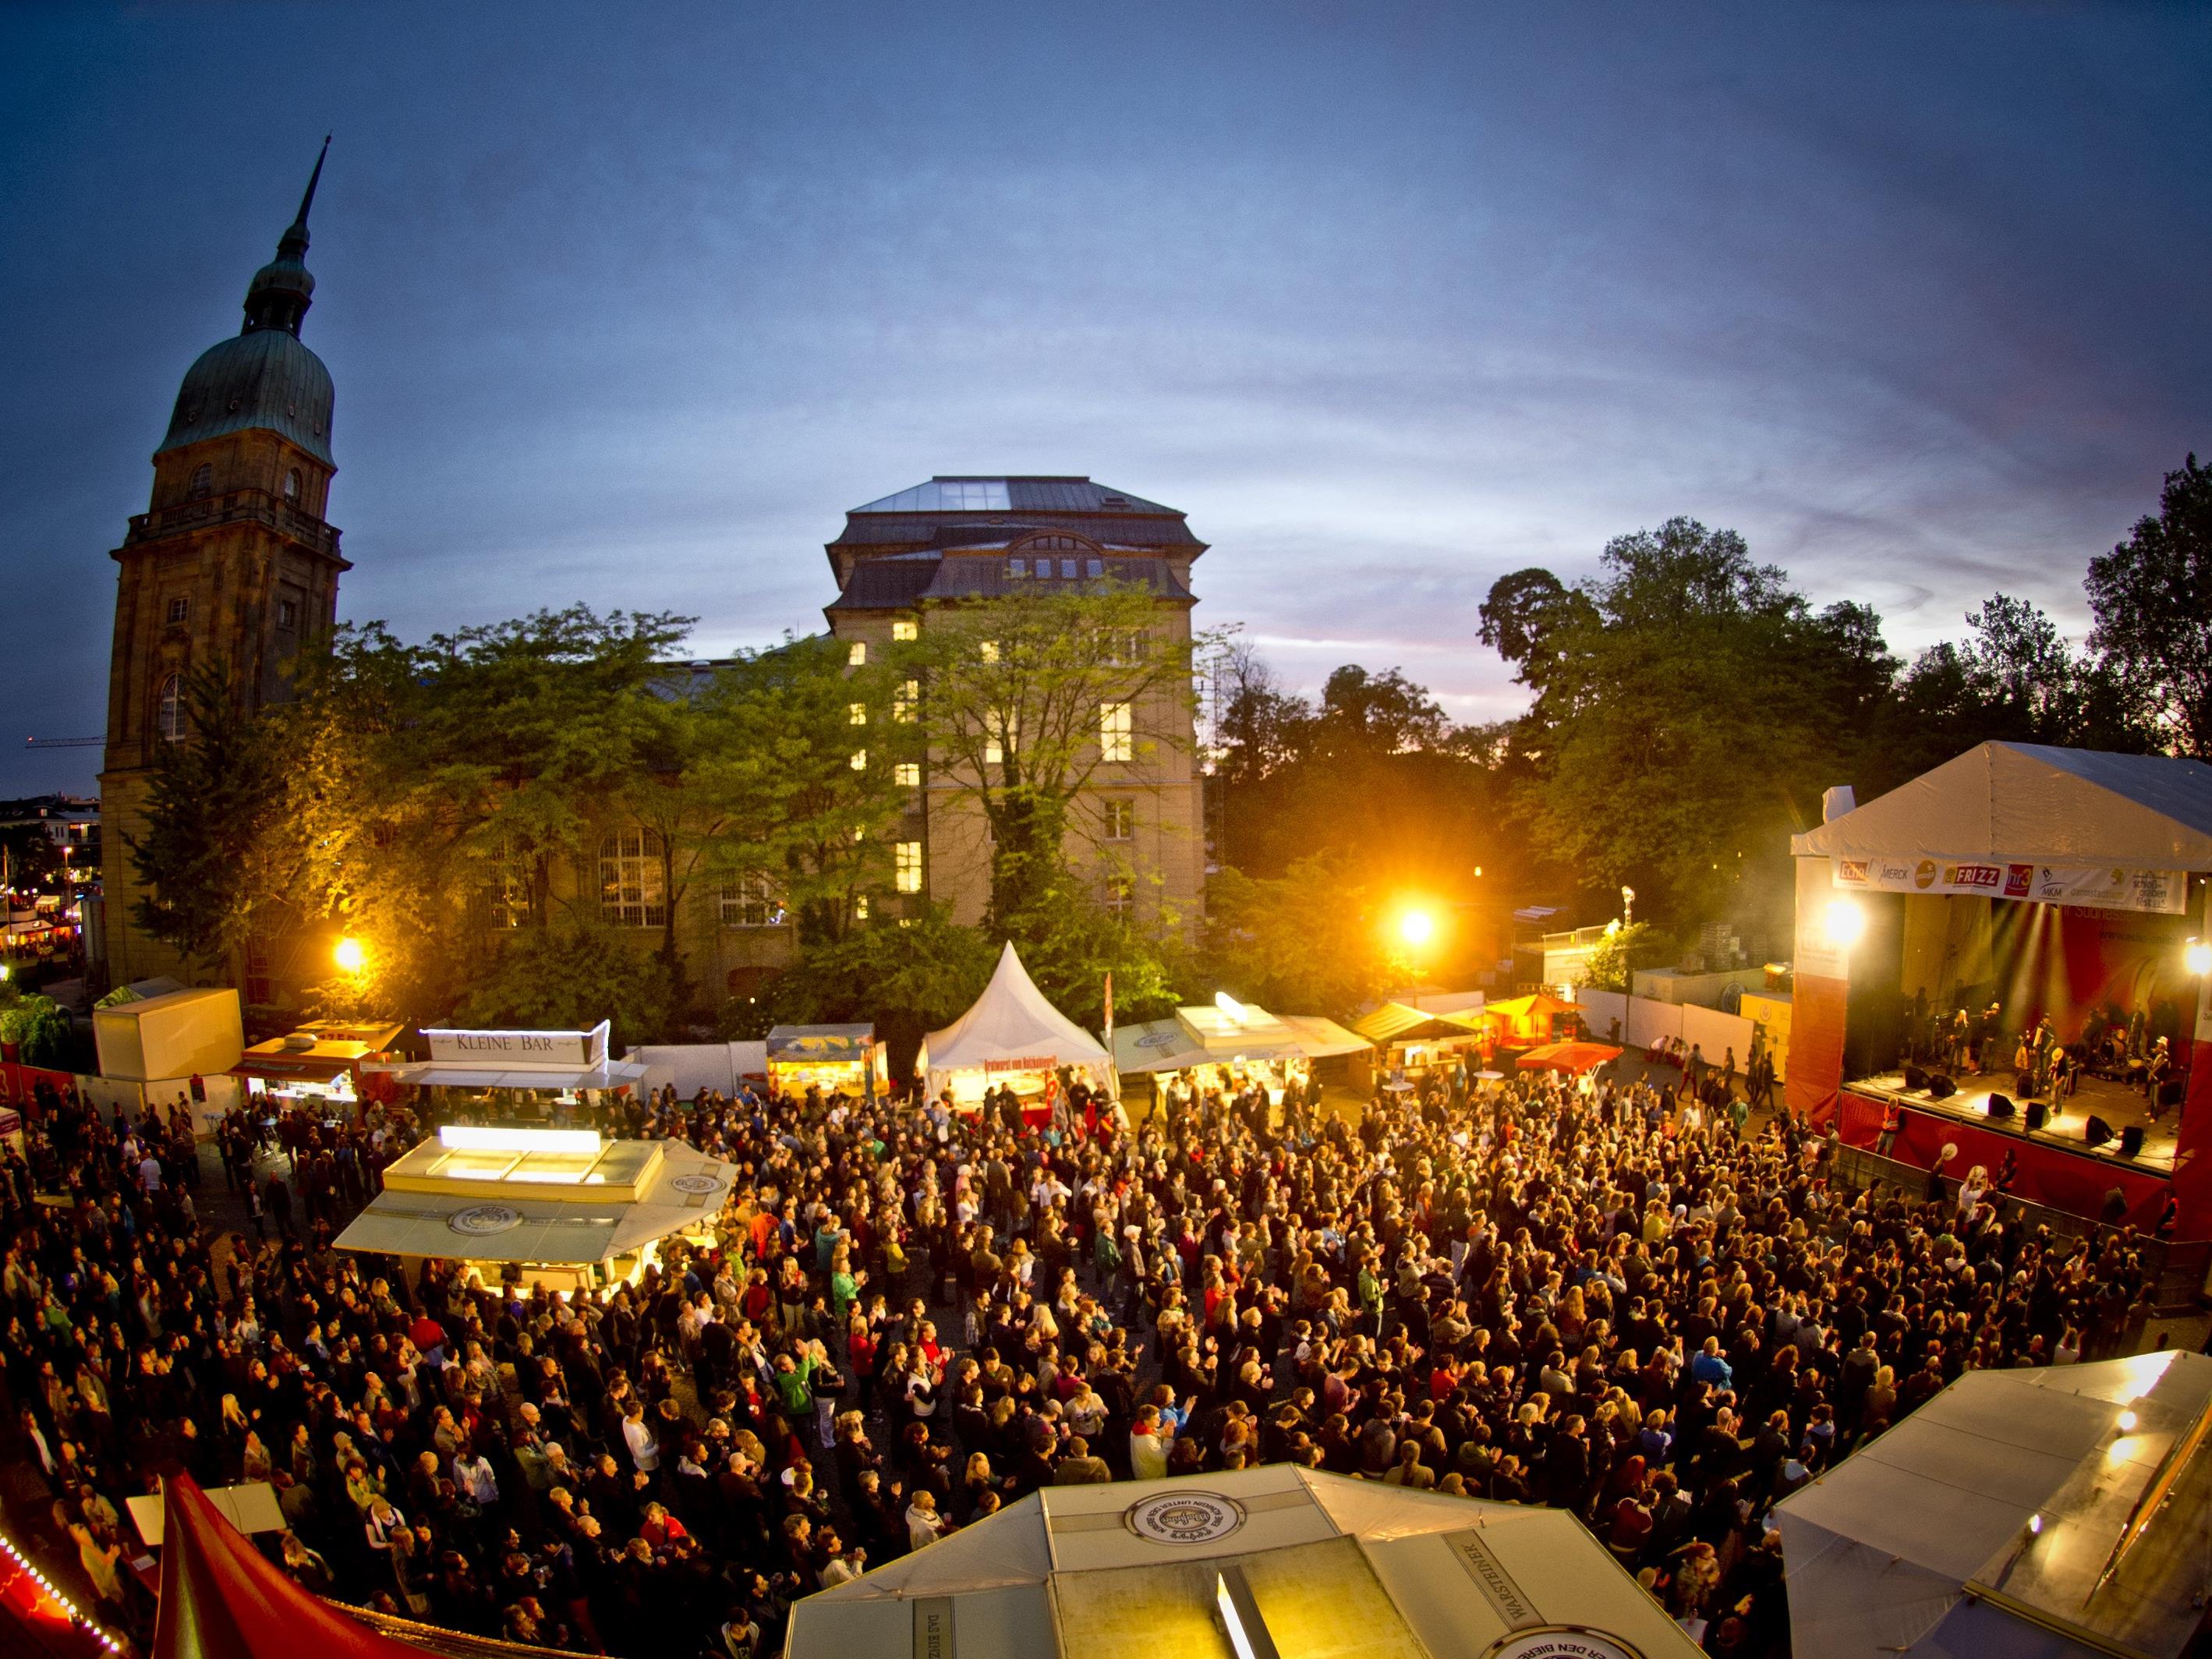 Nach dem Schlossgrabenfest in Darmstadt meldeten sich bisher 18 Frauen wegen sexueller Übergriffe bei der Polizei.